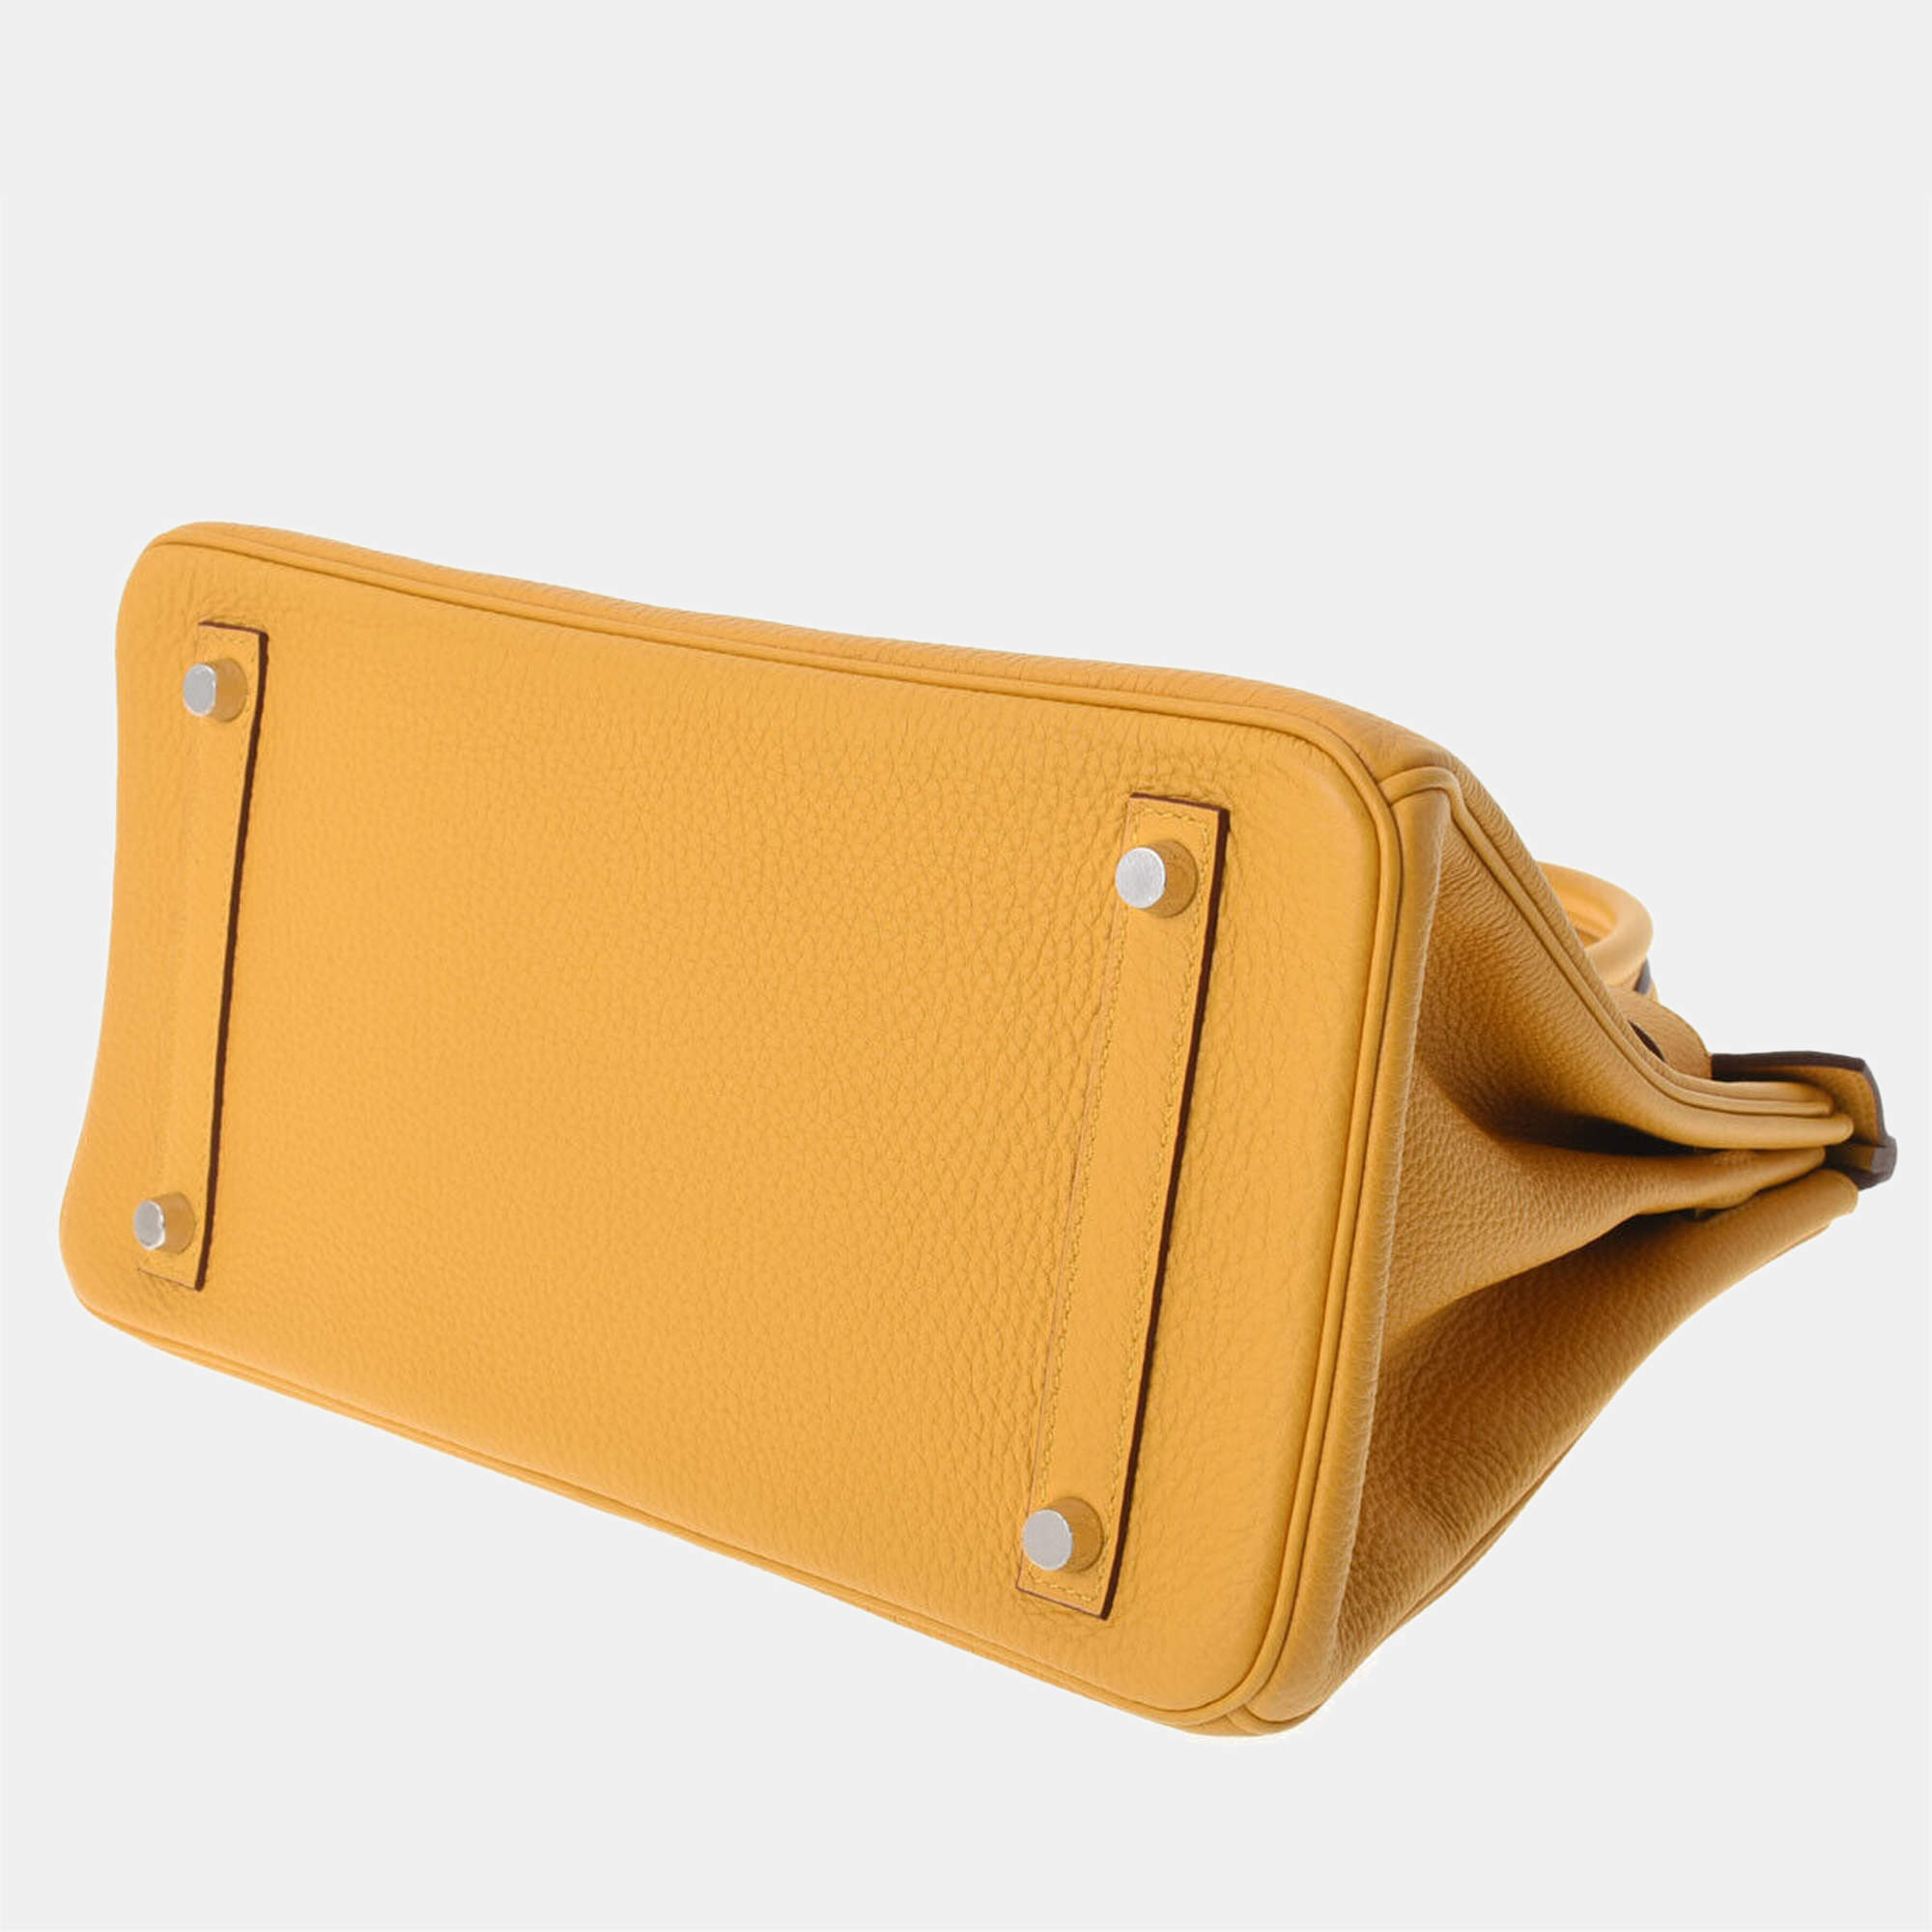 Hermes Birkin Handbag Yellow Togo with Palladium Hardware 30 Yellow 2134842